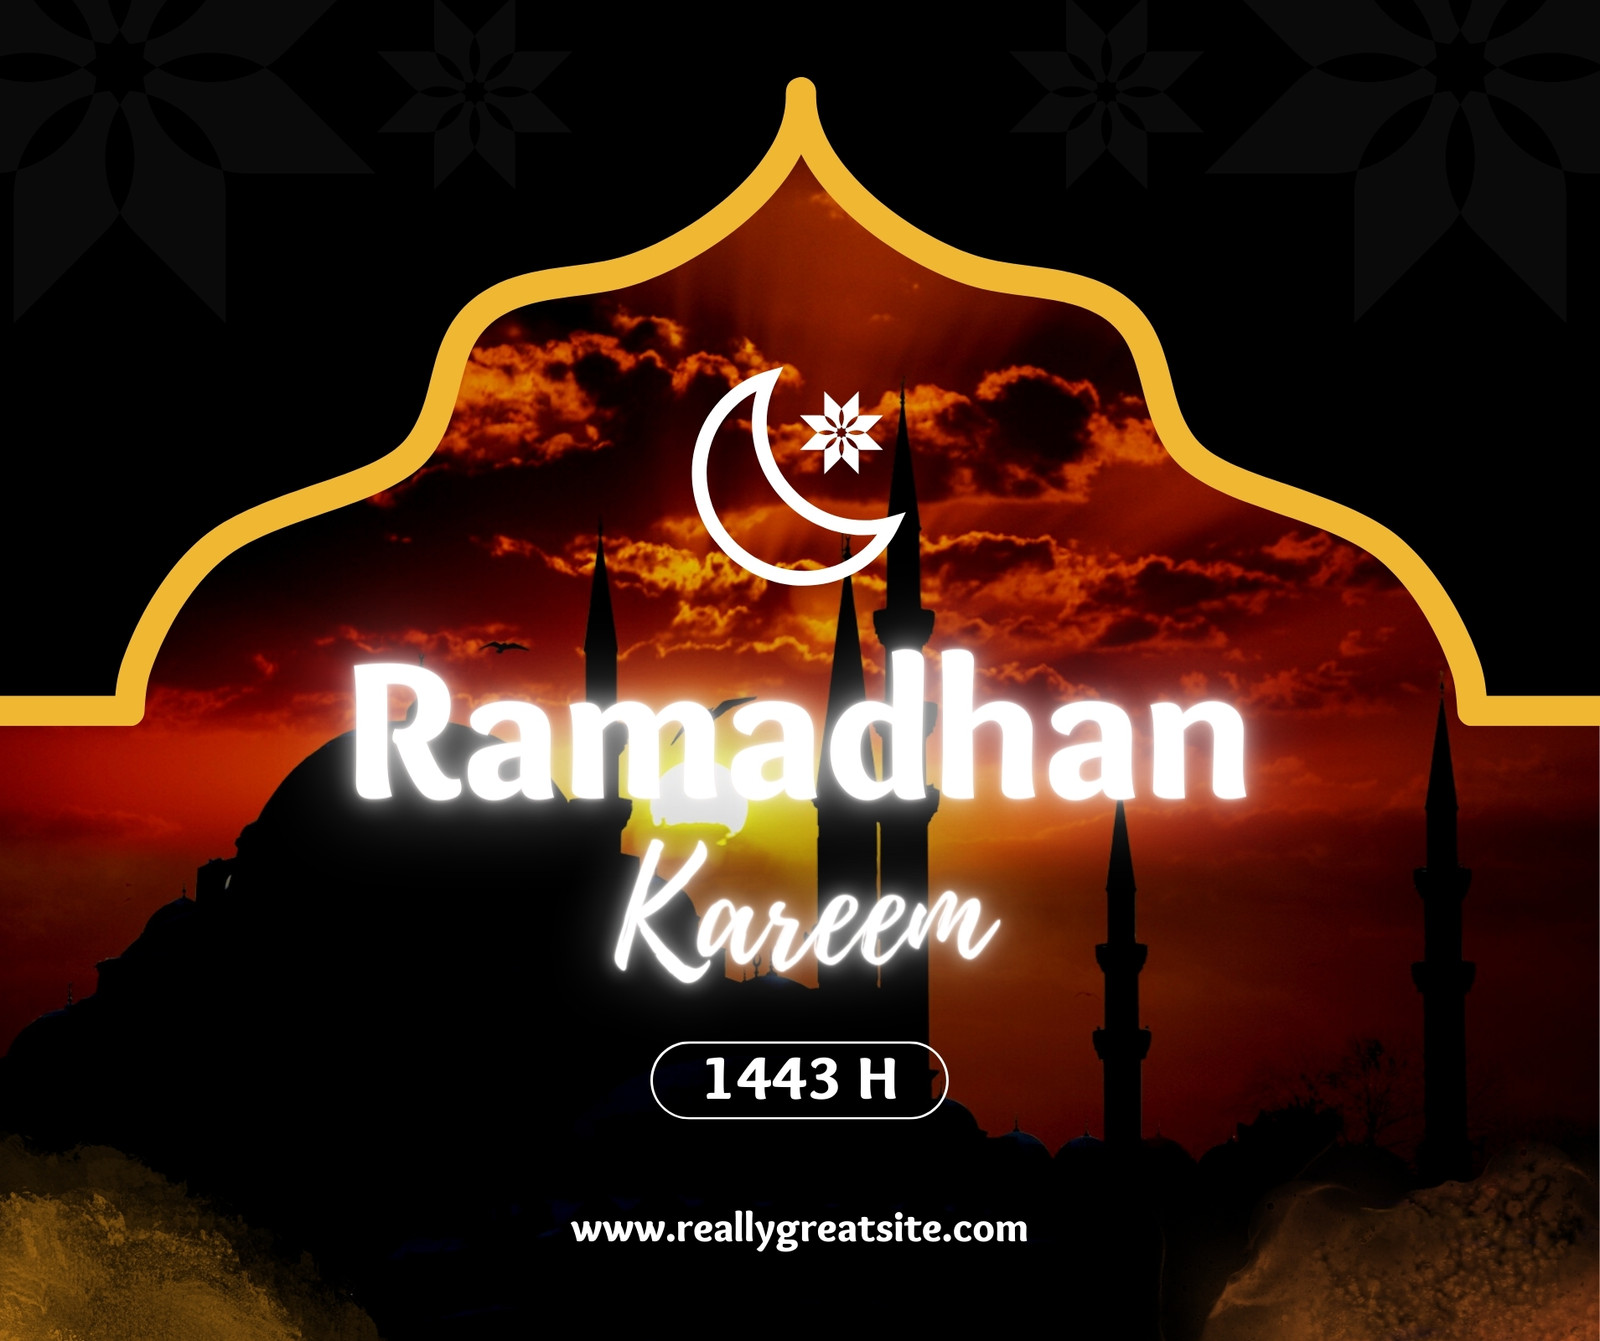 Black and Orange Modern Ramadhan Kareem Facebook Post